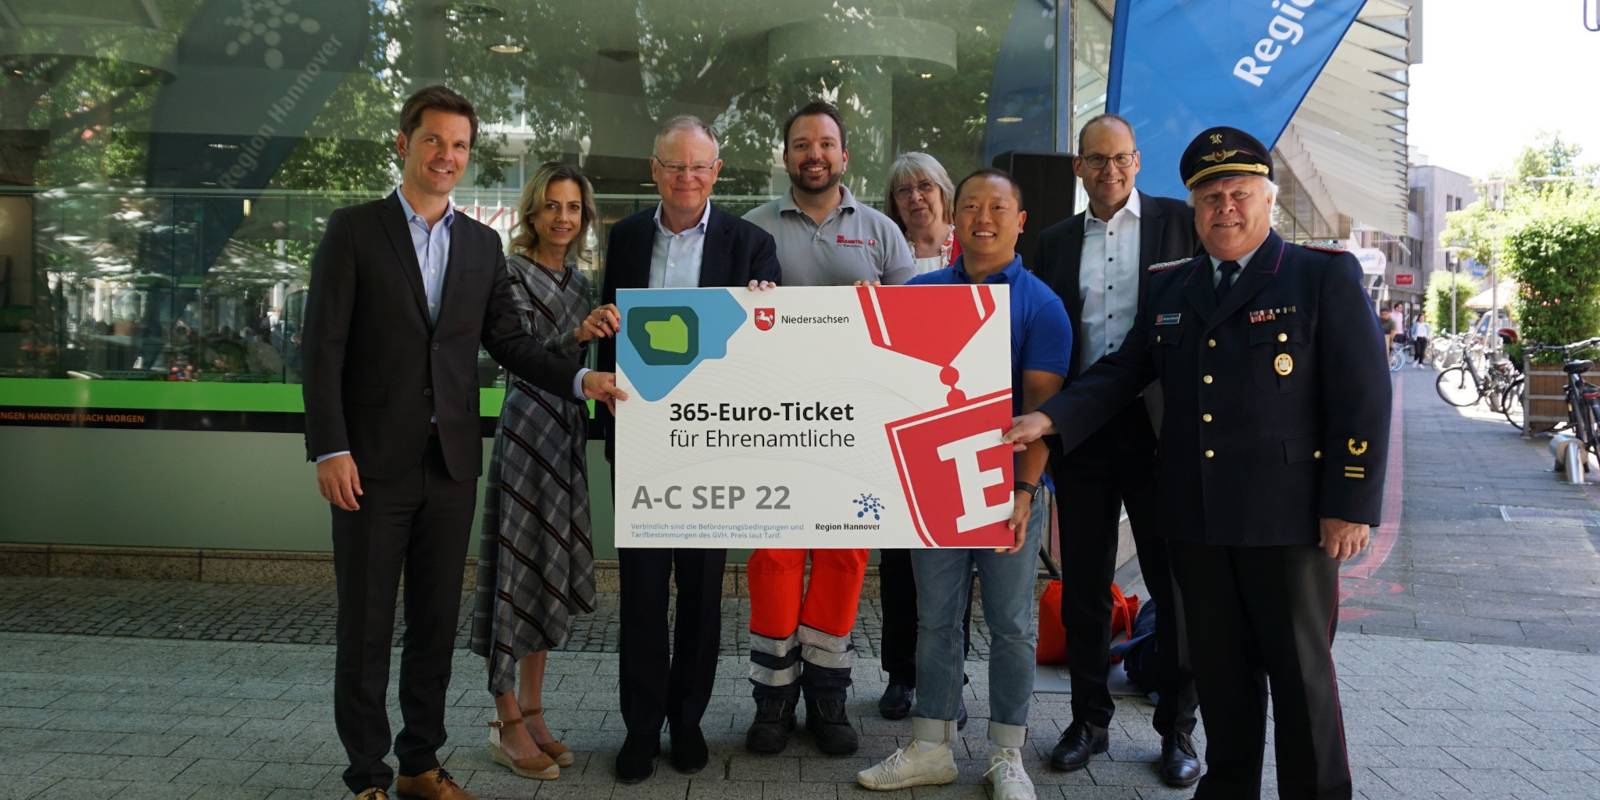 Eine Gruppe von Menschen hält ein Pappschild auf dem "365-Euro-Ticket für Ehrenamtliche" steht